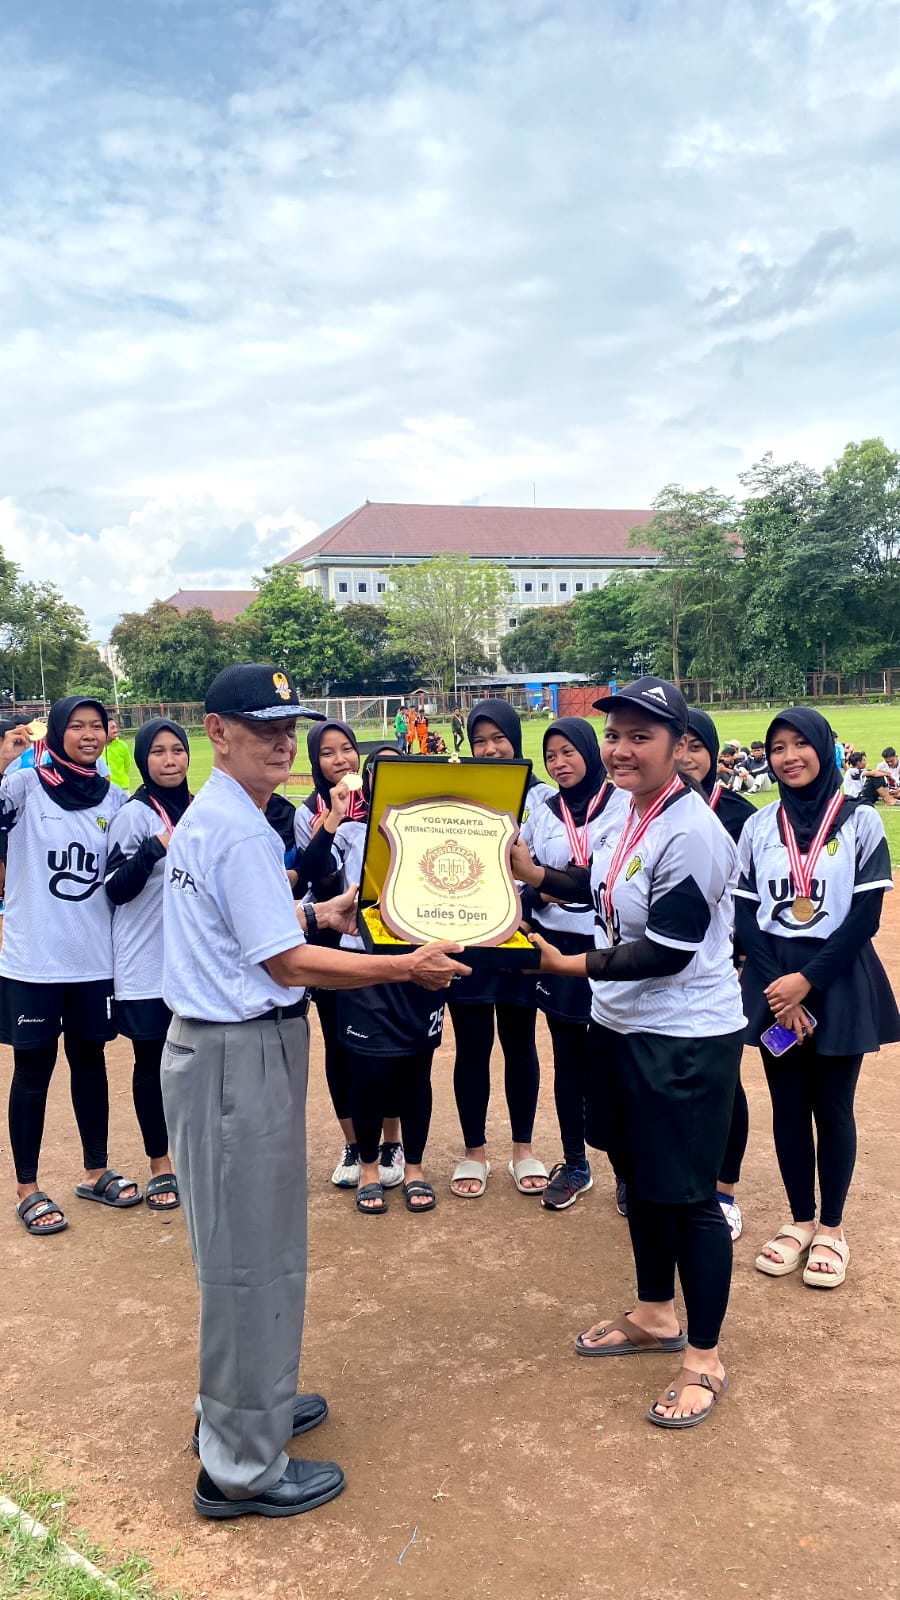 Foto Yogyakarta International Hockey Challenge 2023